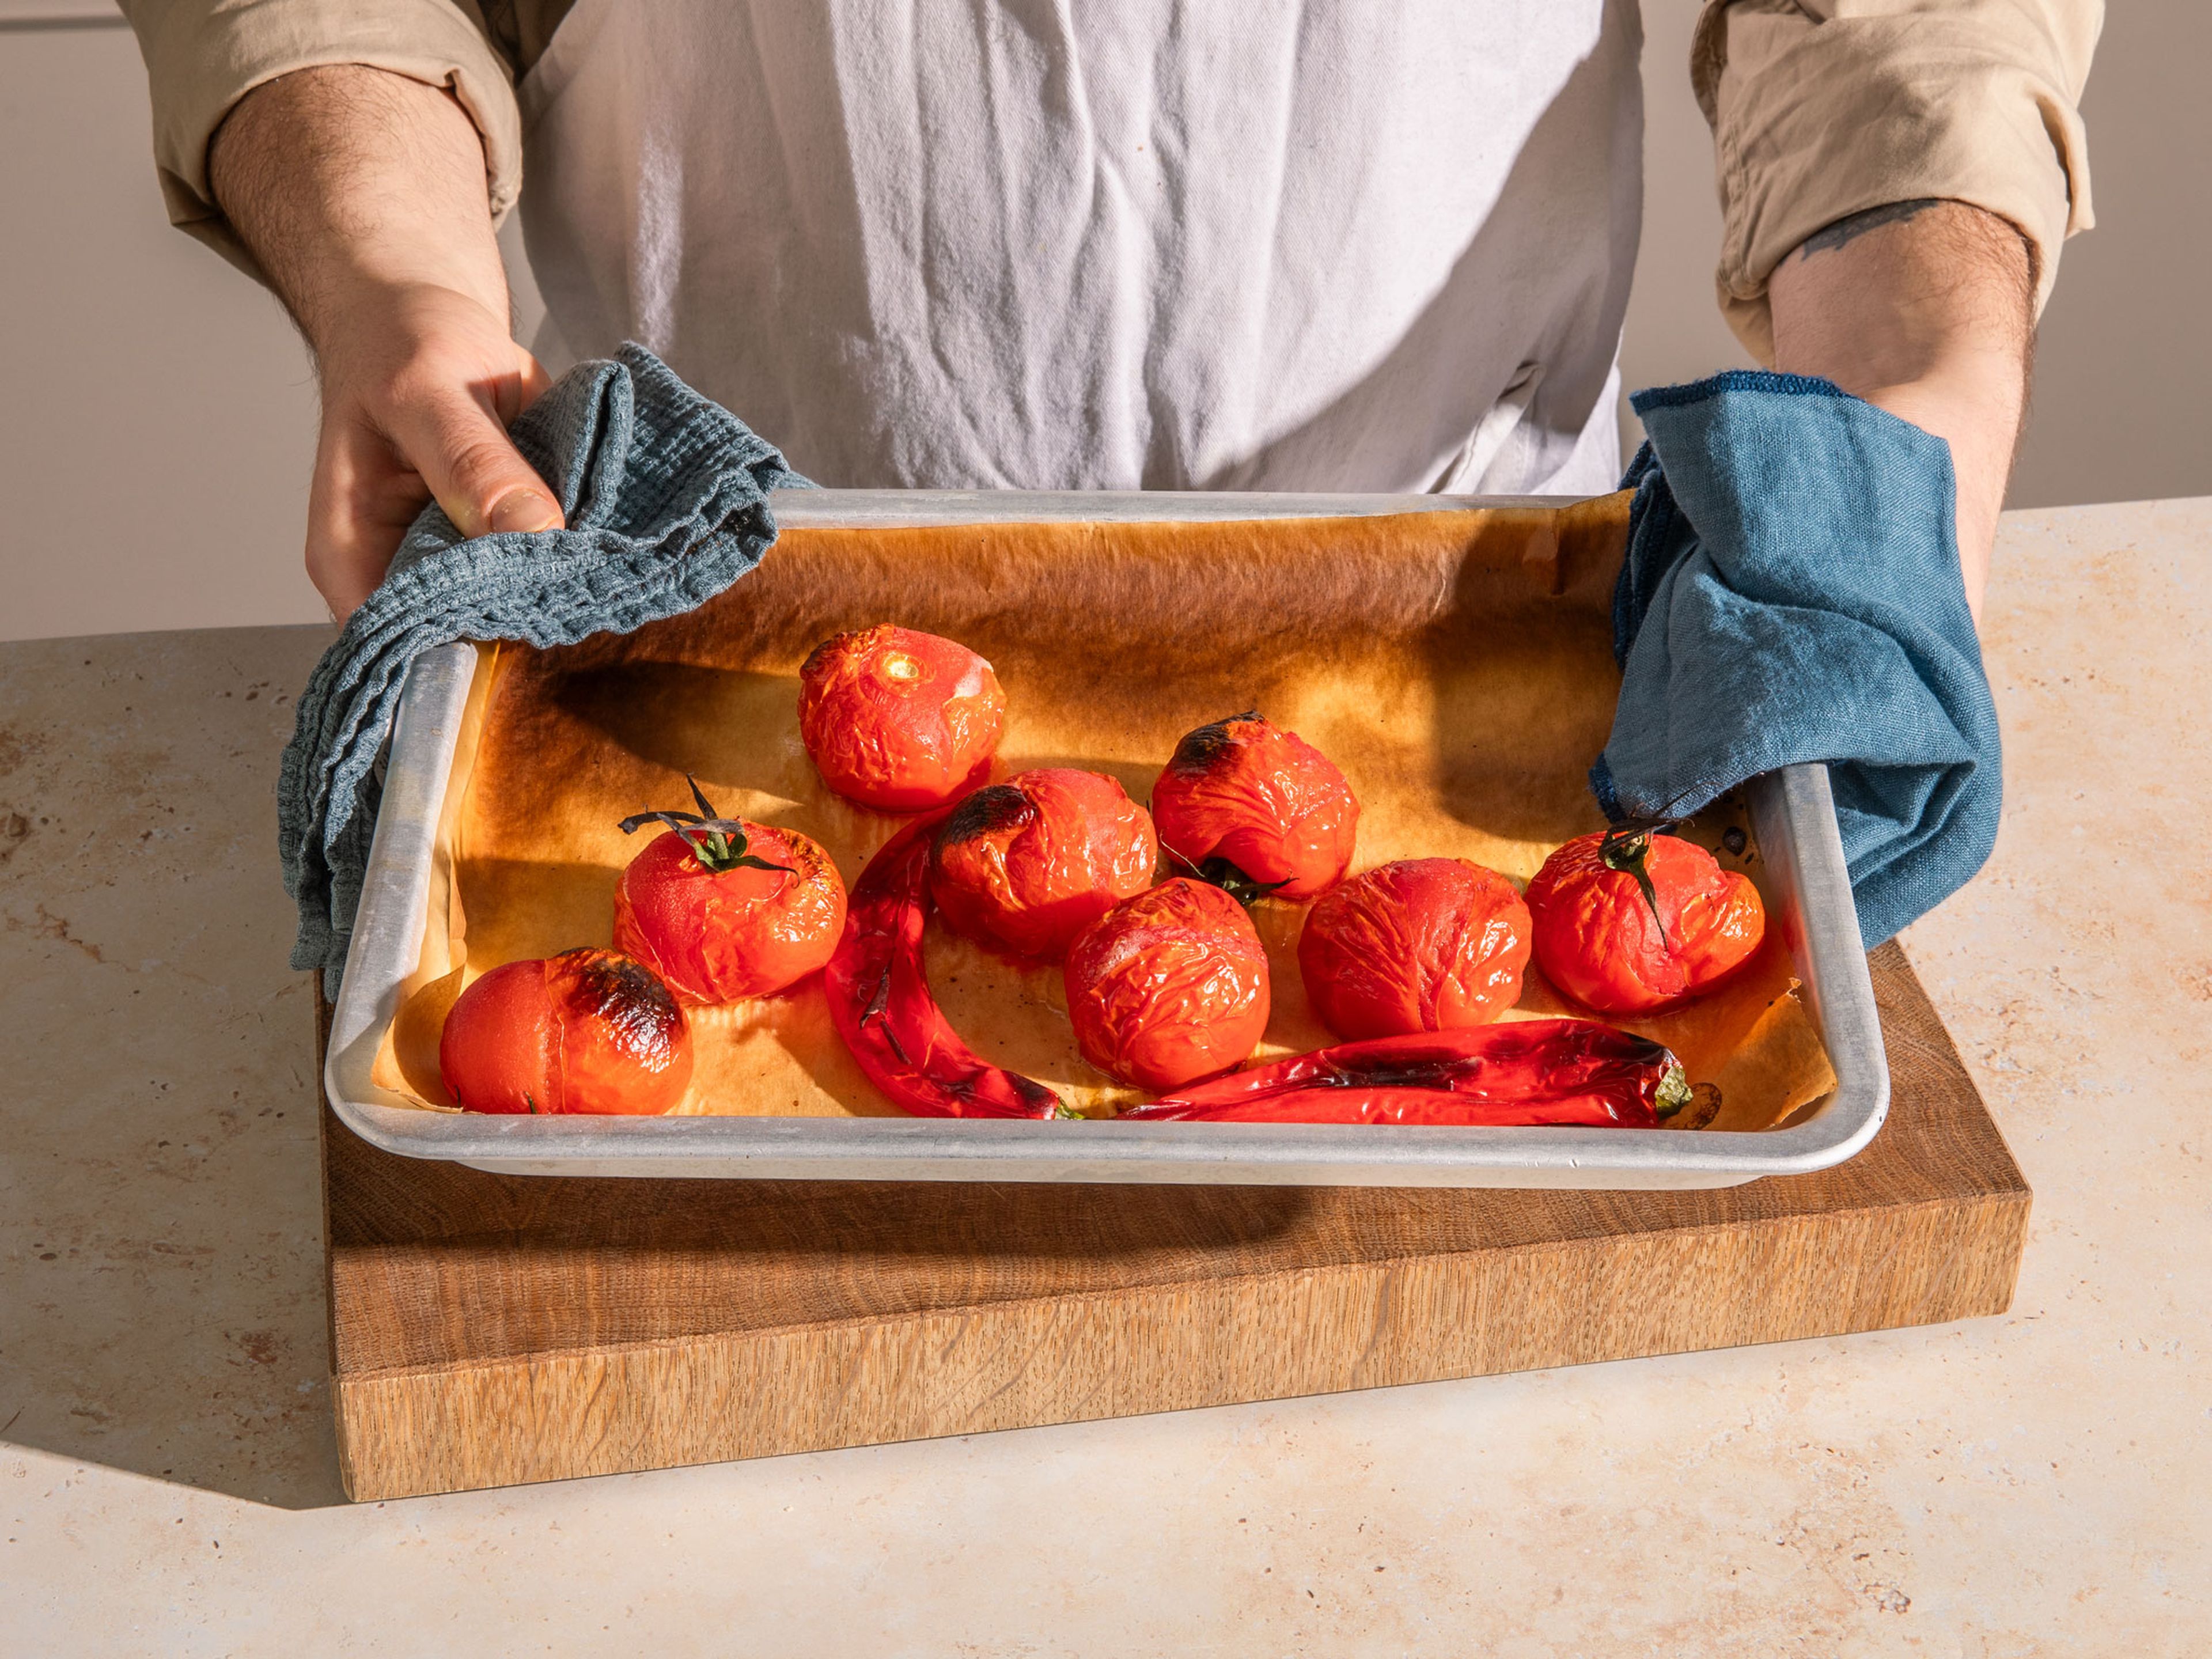 Für den Tomaten-Dip die Grillfunktion des Ofens auf hohe Stufe stellen. Die Tomaten und Chilischoten auf ein mit Backpapier ausgelegtes Backblech legen und unter dem Grill ca. 15 Min. garen oder bis beides angekohlt und weich ist. Beides in eine Schüssel geben, mit Frischhaltefolie oder einem Teller abdecken und ca. 20 Min. dämpfen lassen. Nach dem Dämpfen beides schälen.